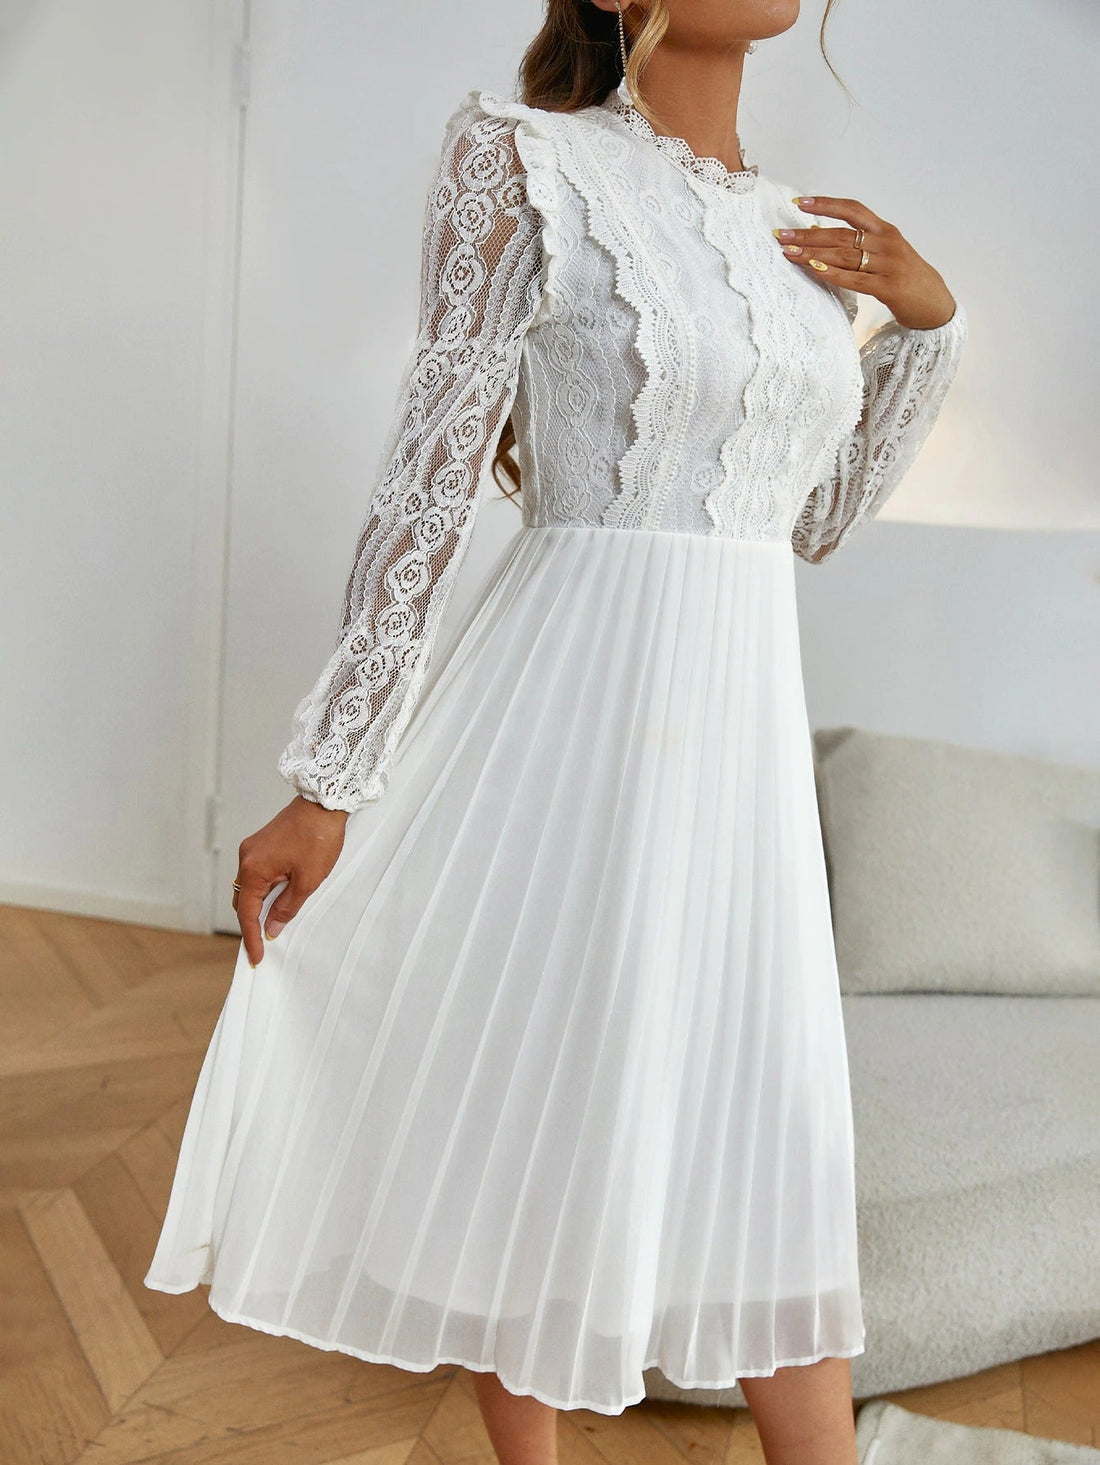 Women's Summer/Autumn White Long Sleeved Dress | Wedding Dress